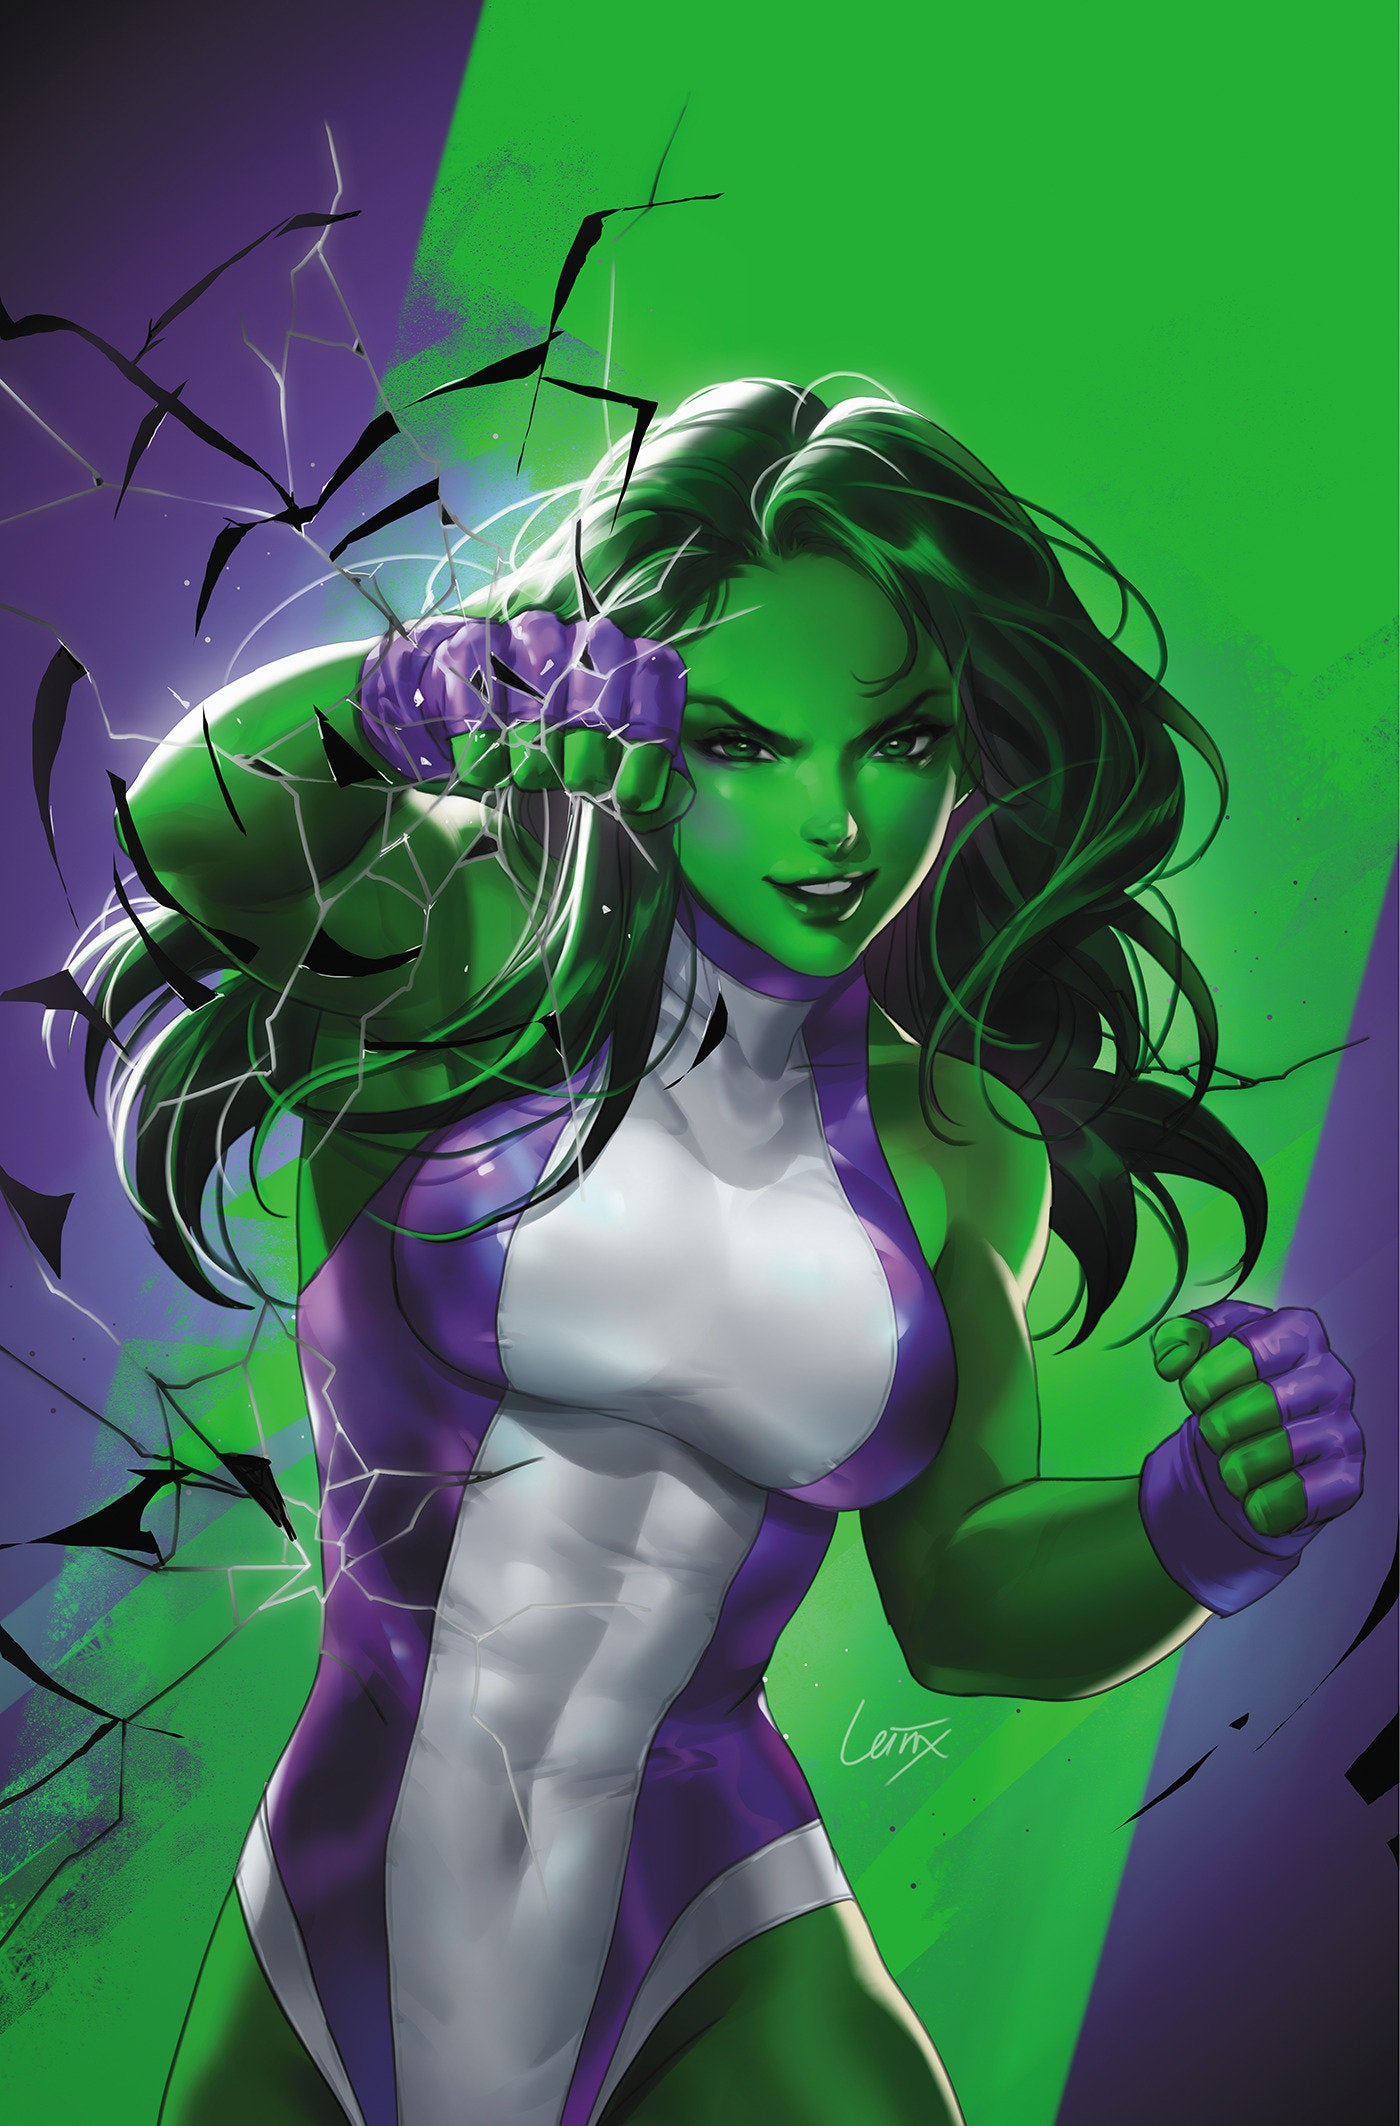 Sensational She-Hulk 1 Leirix She-Hulk Full Art Variant